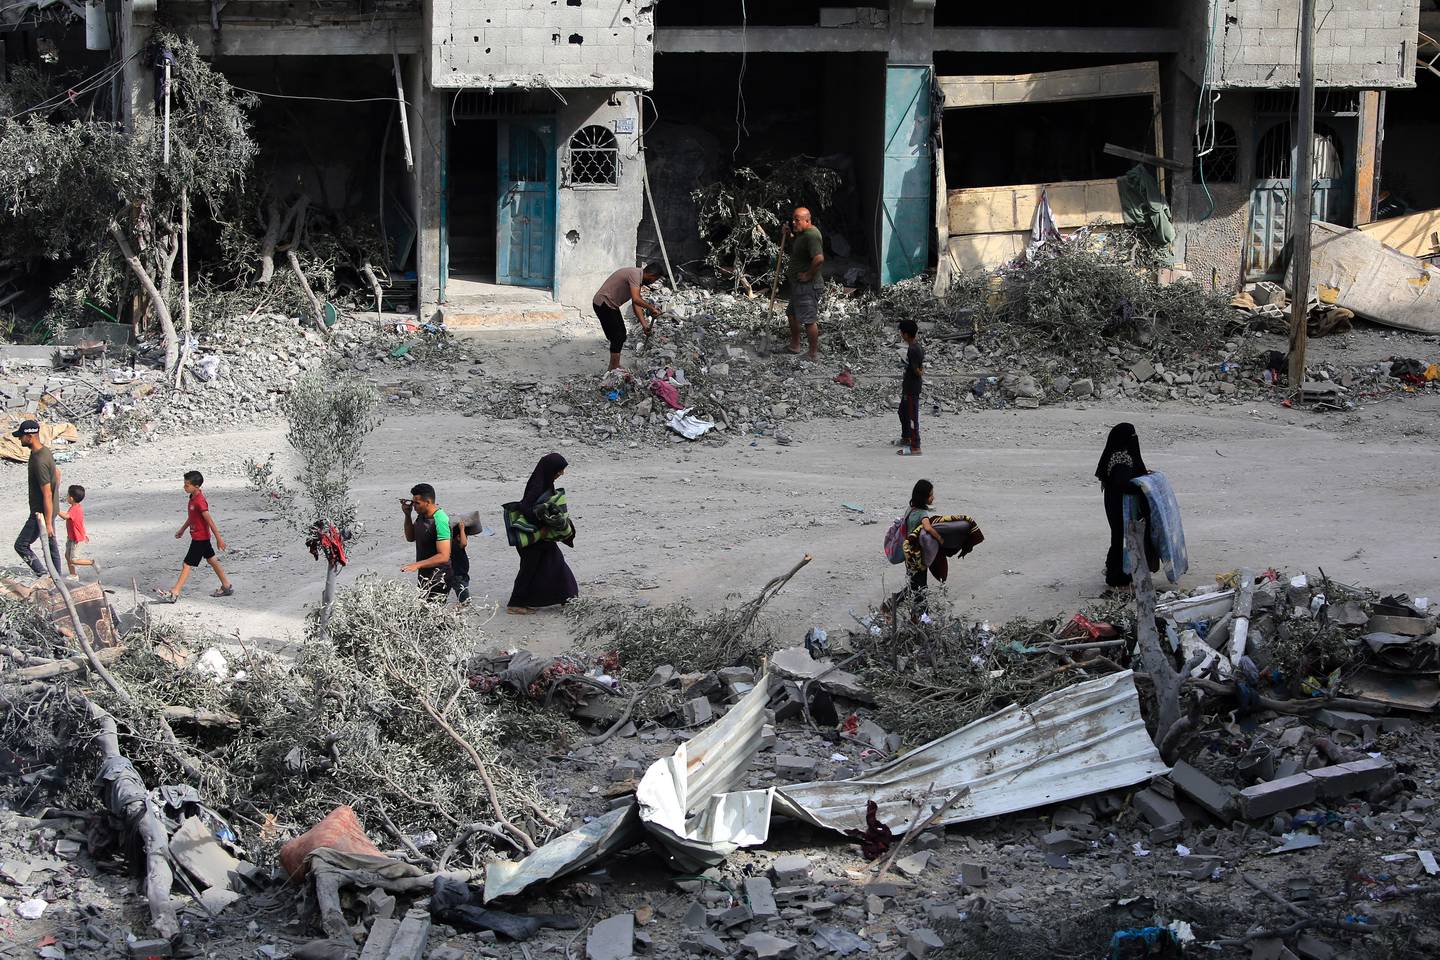 Durante la operación, se destruyeron casas con los habitantes todavía dentro, y había tiendas y coches en llamas a causa de los bombardeos.